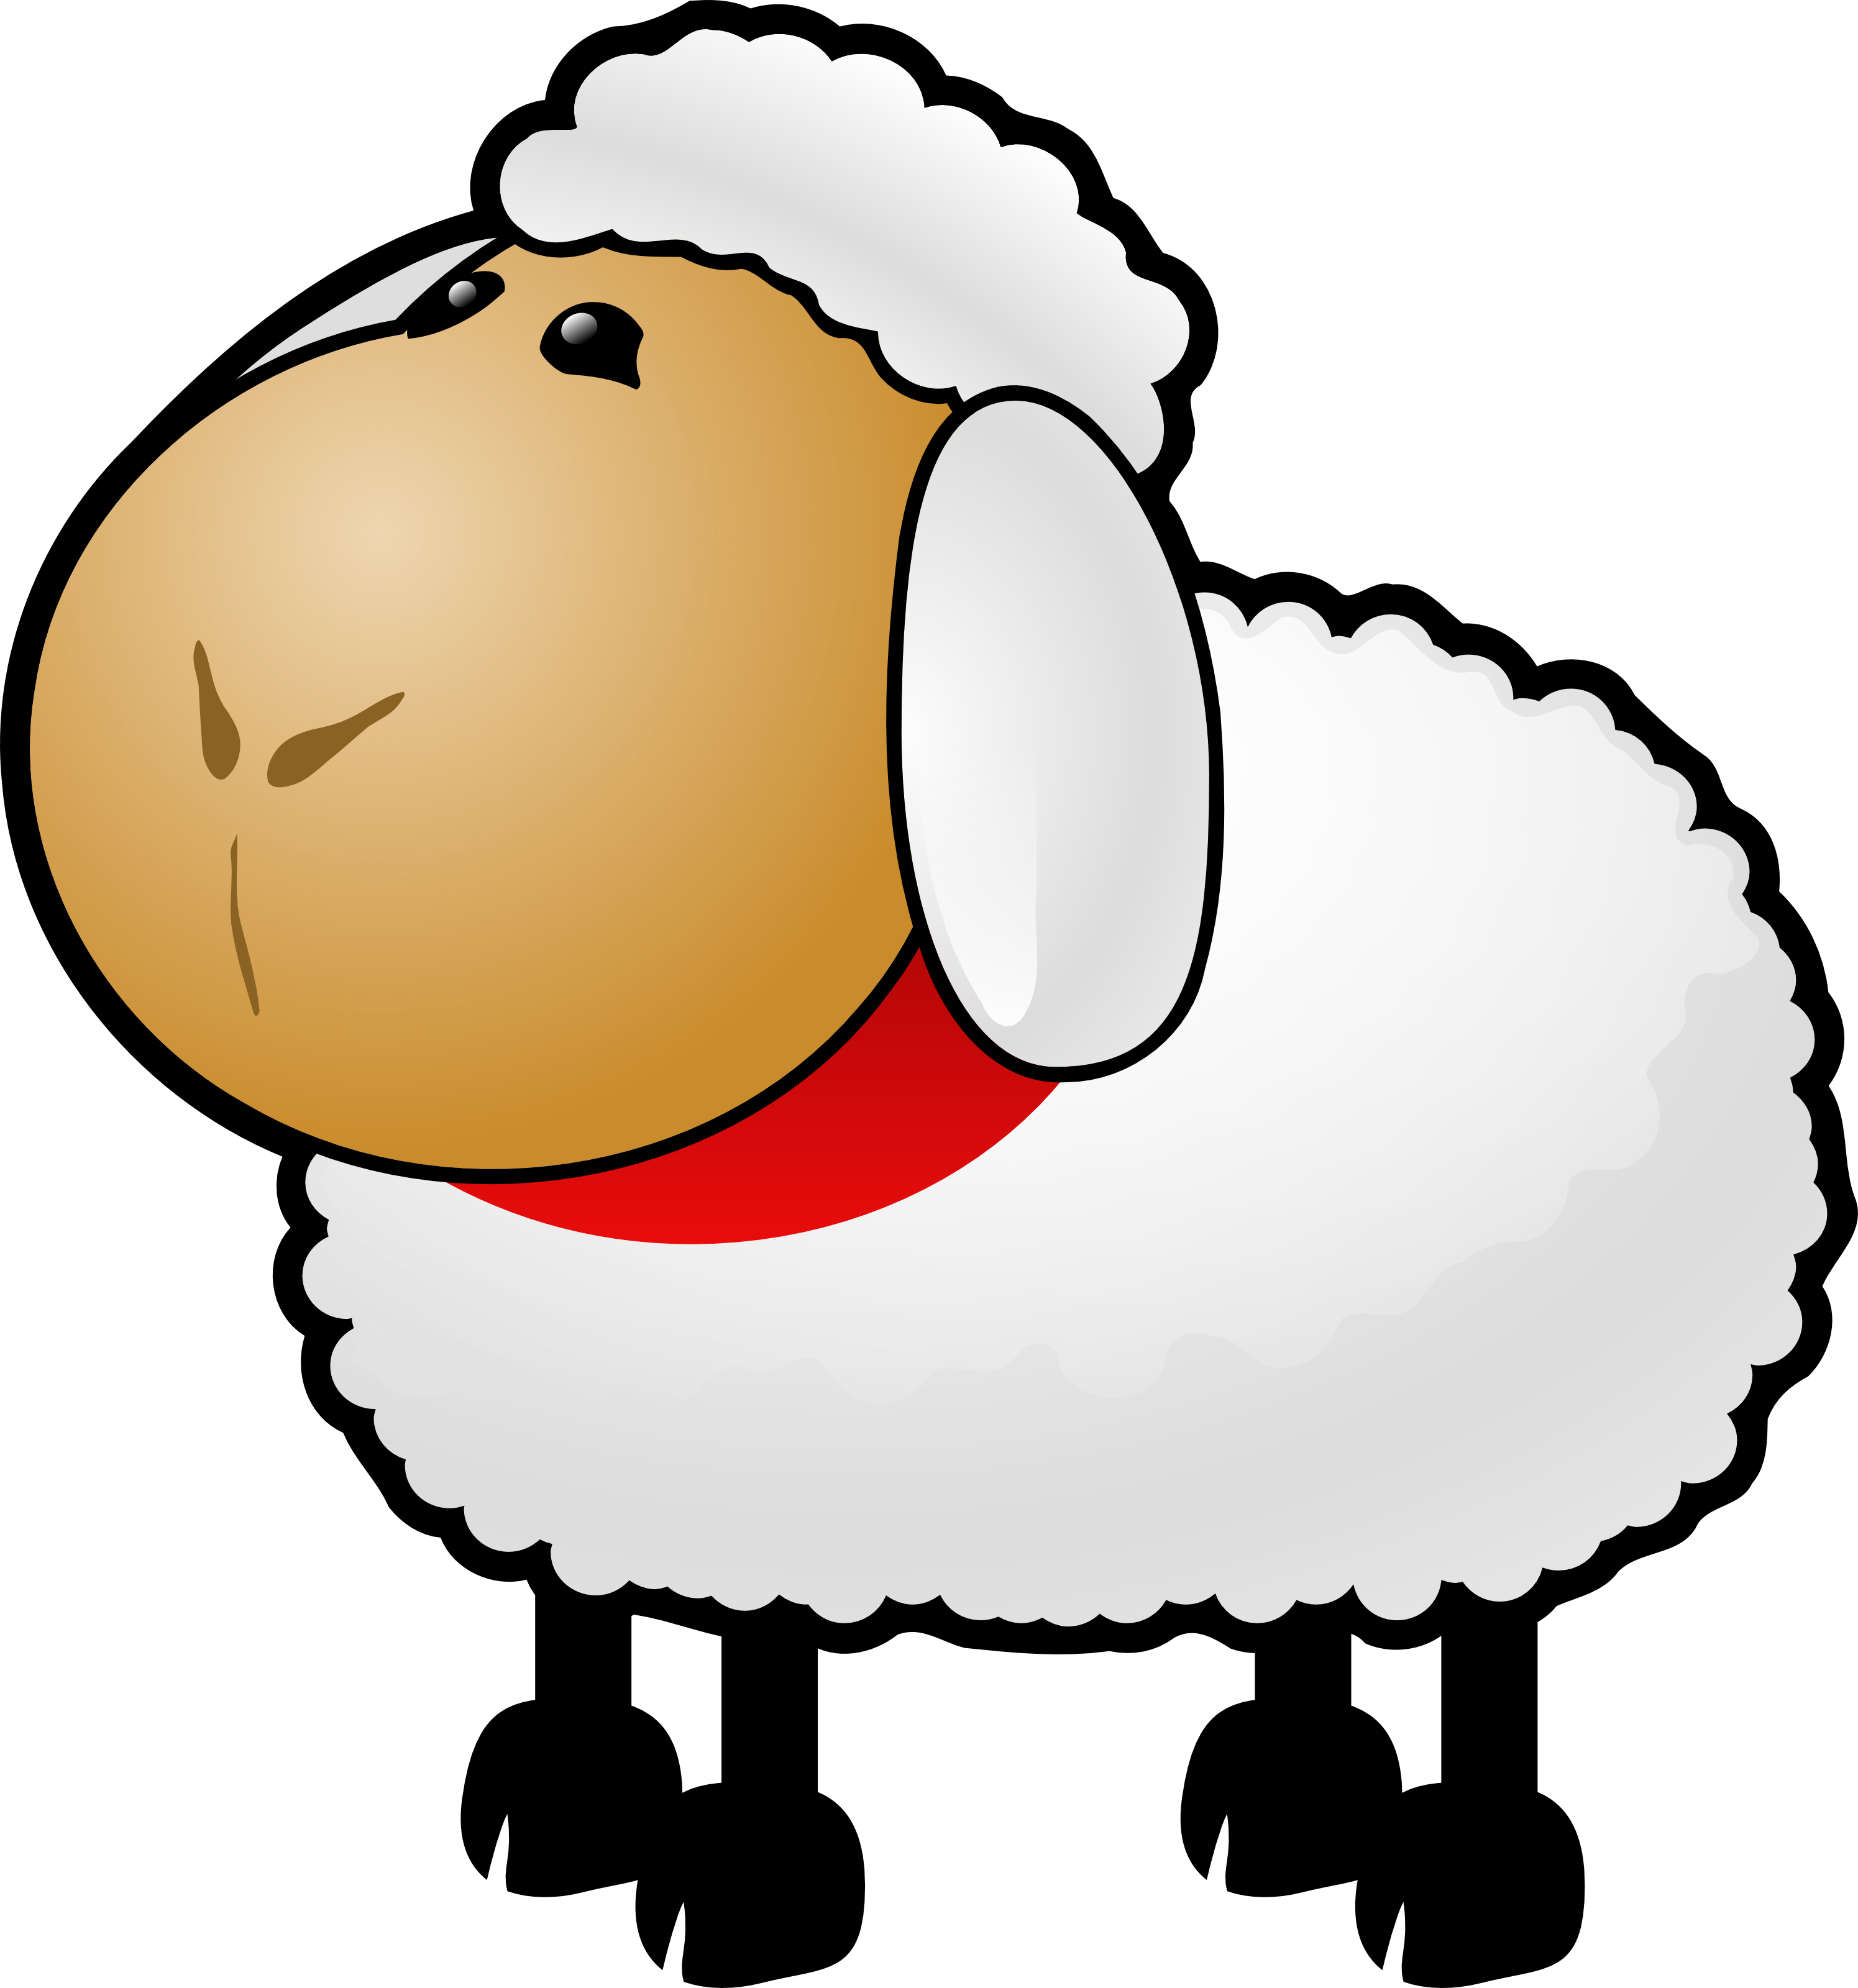 Sheep lamb clip art free clipart images 2